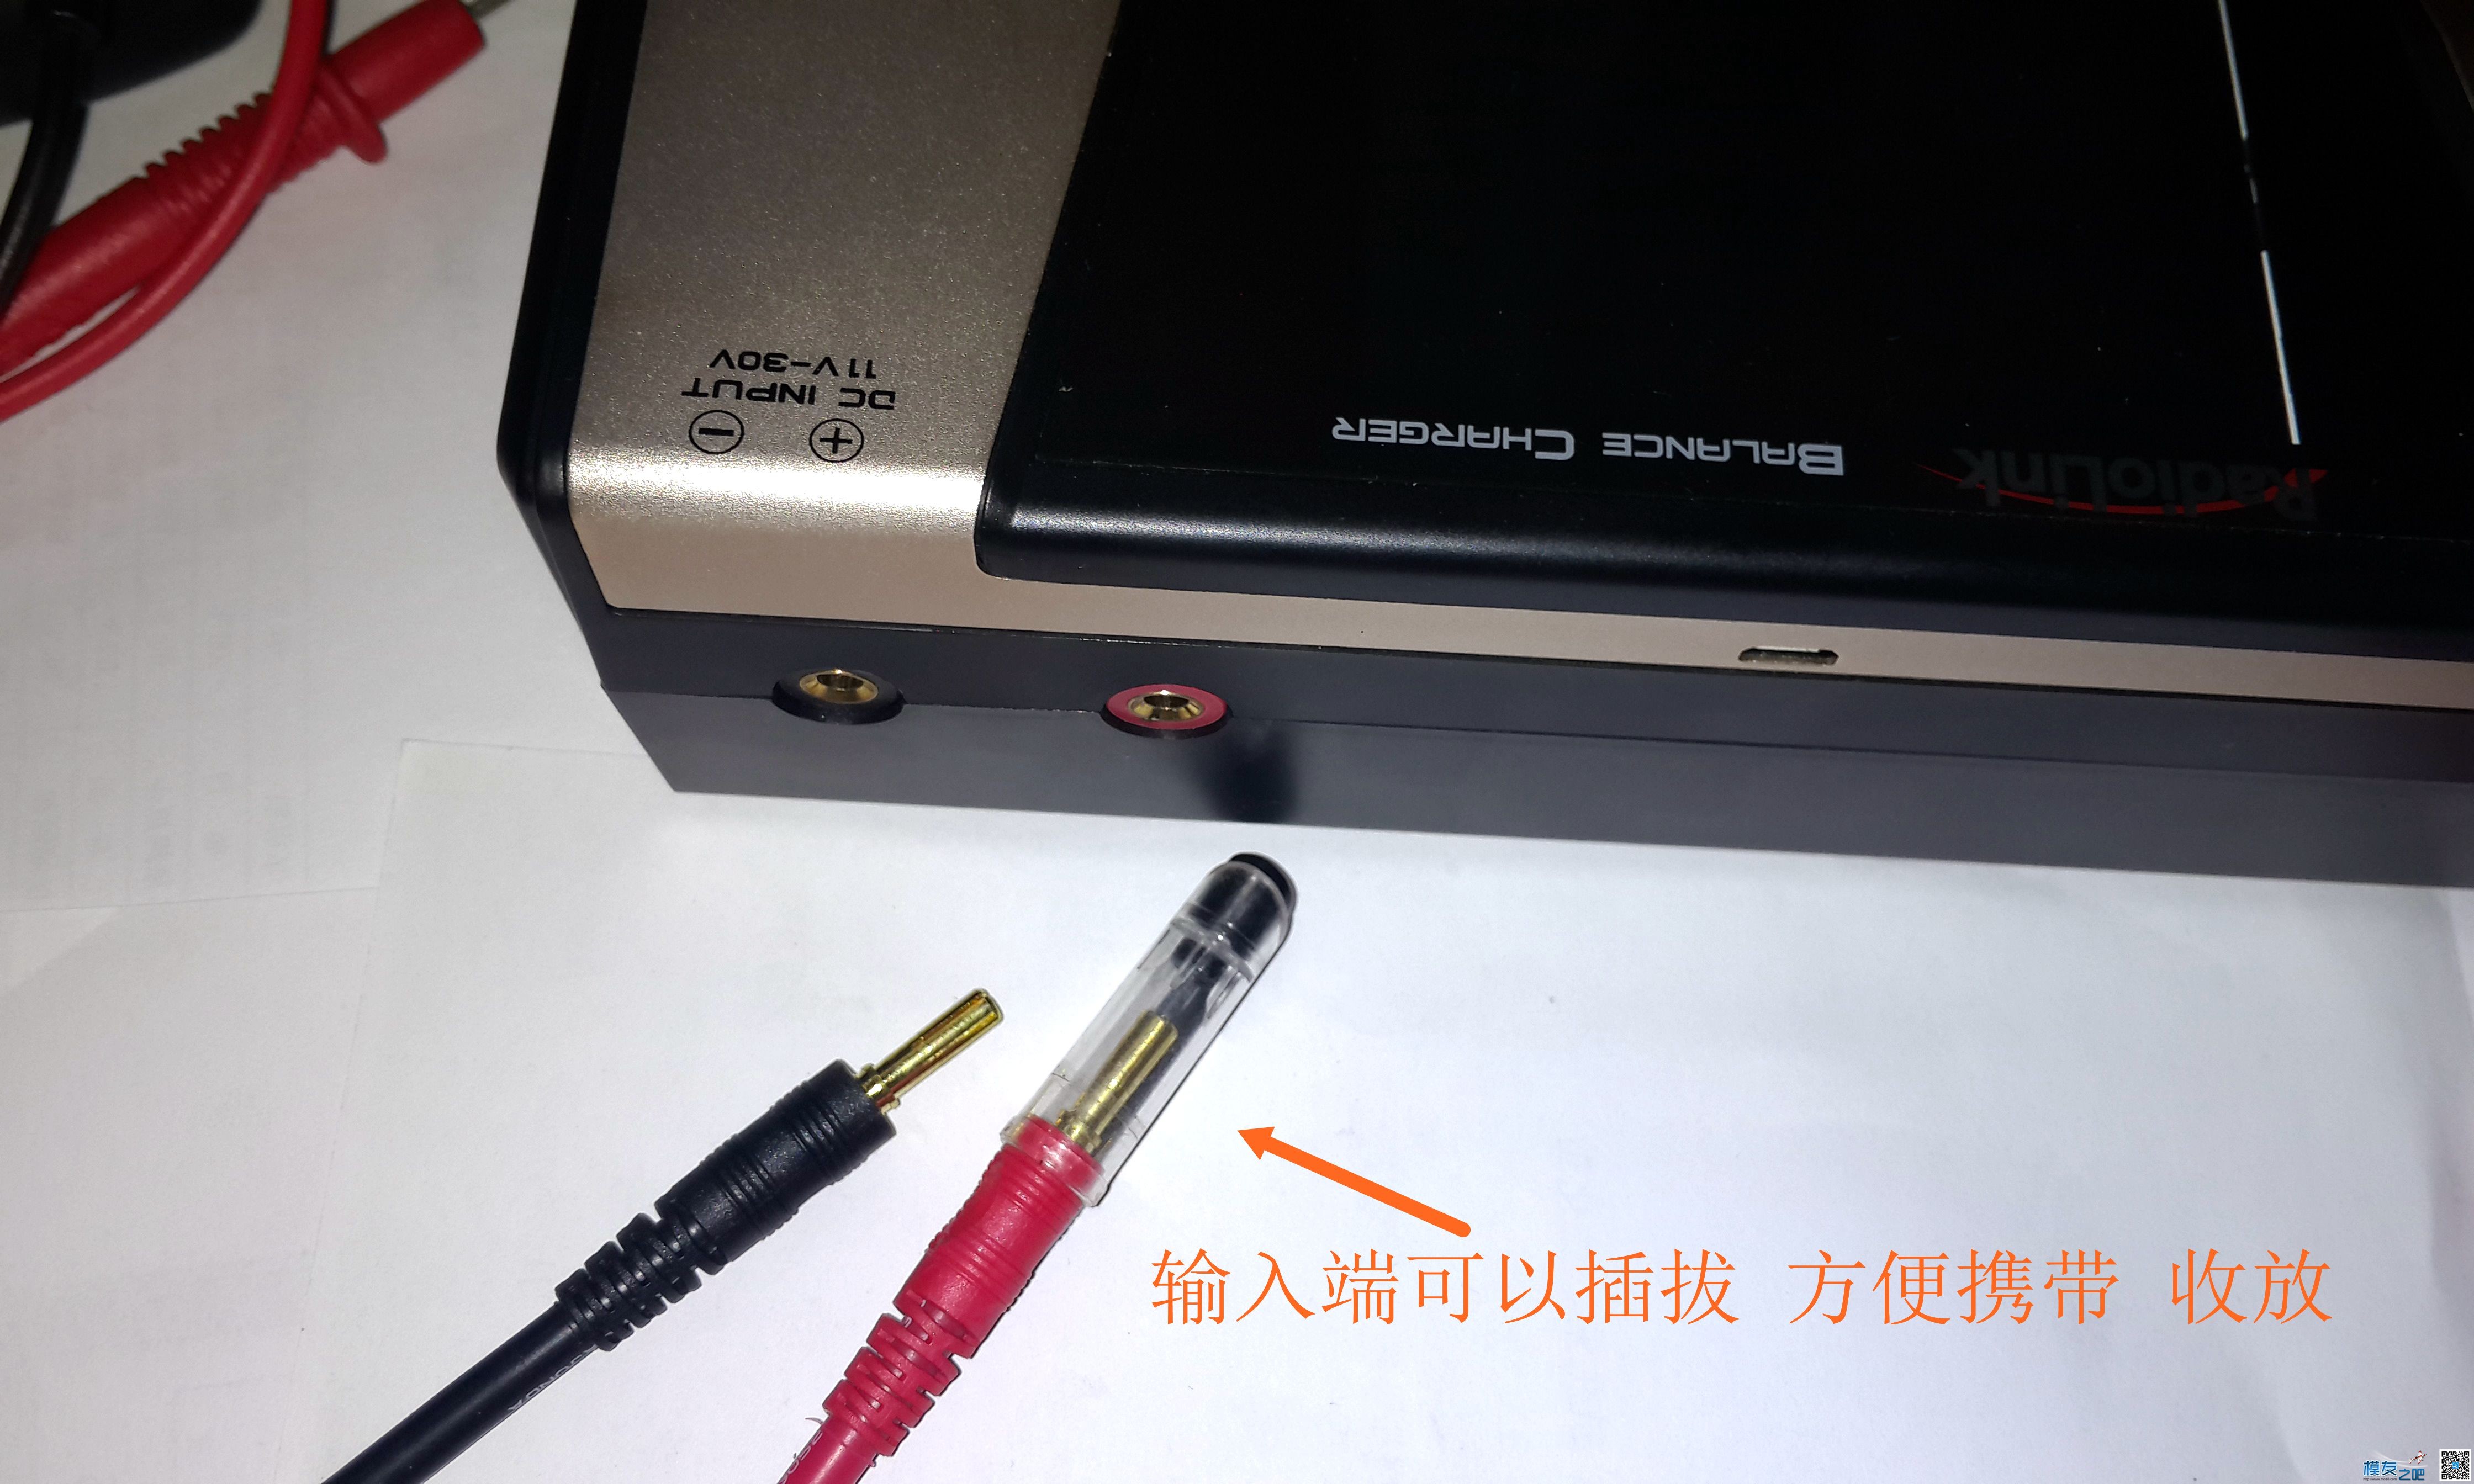 乐迪CP620开箱与CB86PLUS对比测试 电池,充电器,乐迪,固件,html 作者:455090630 3498 